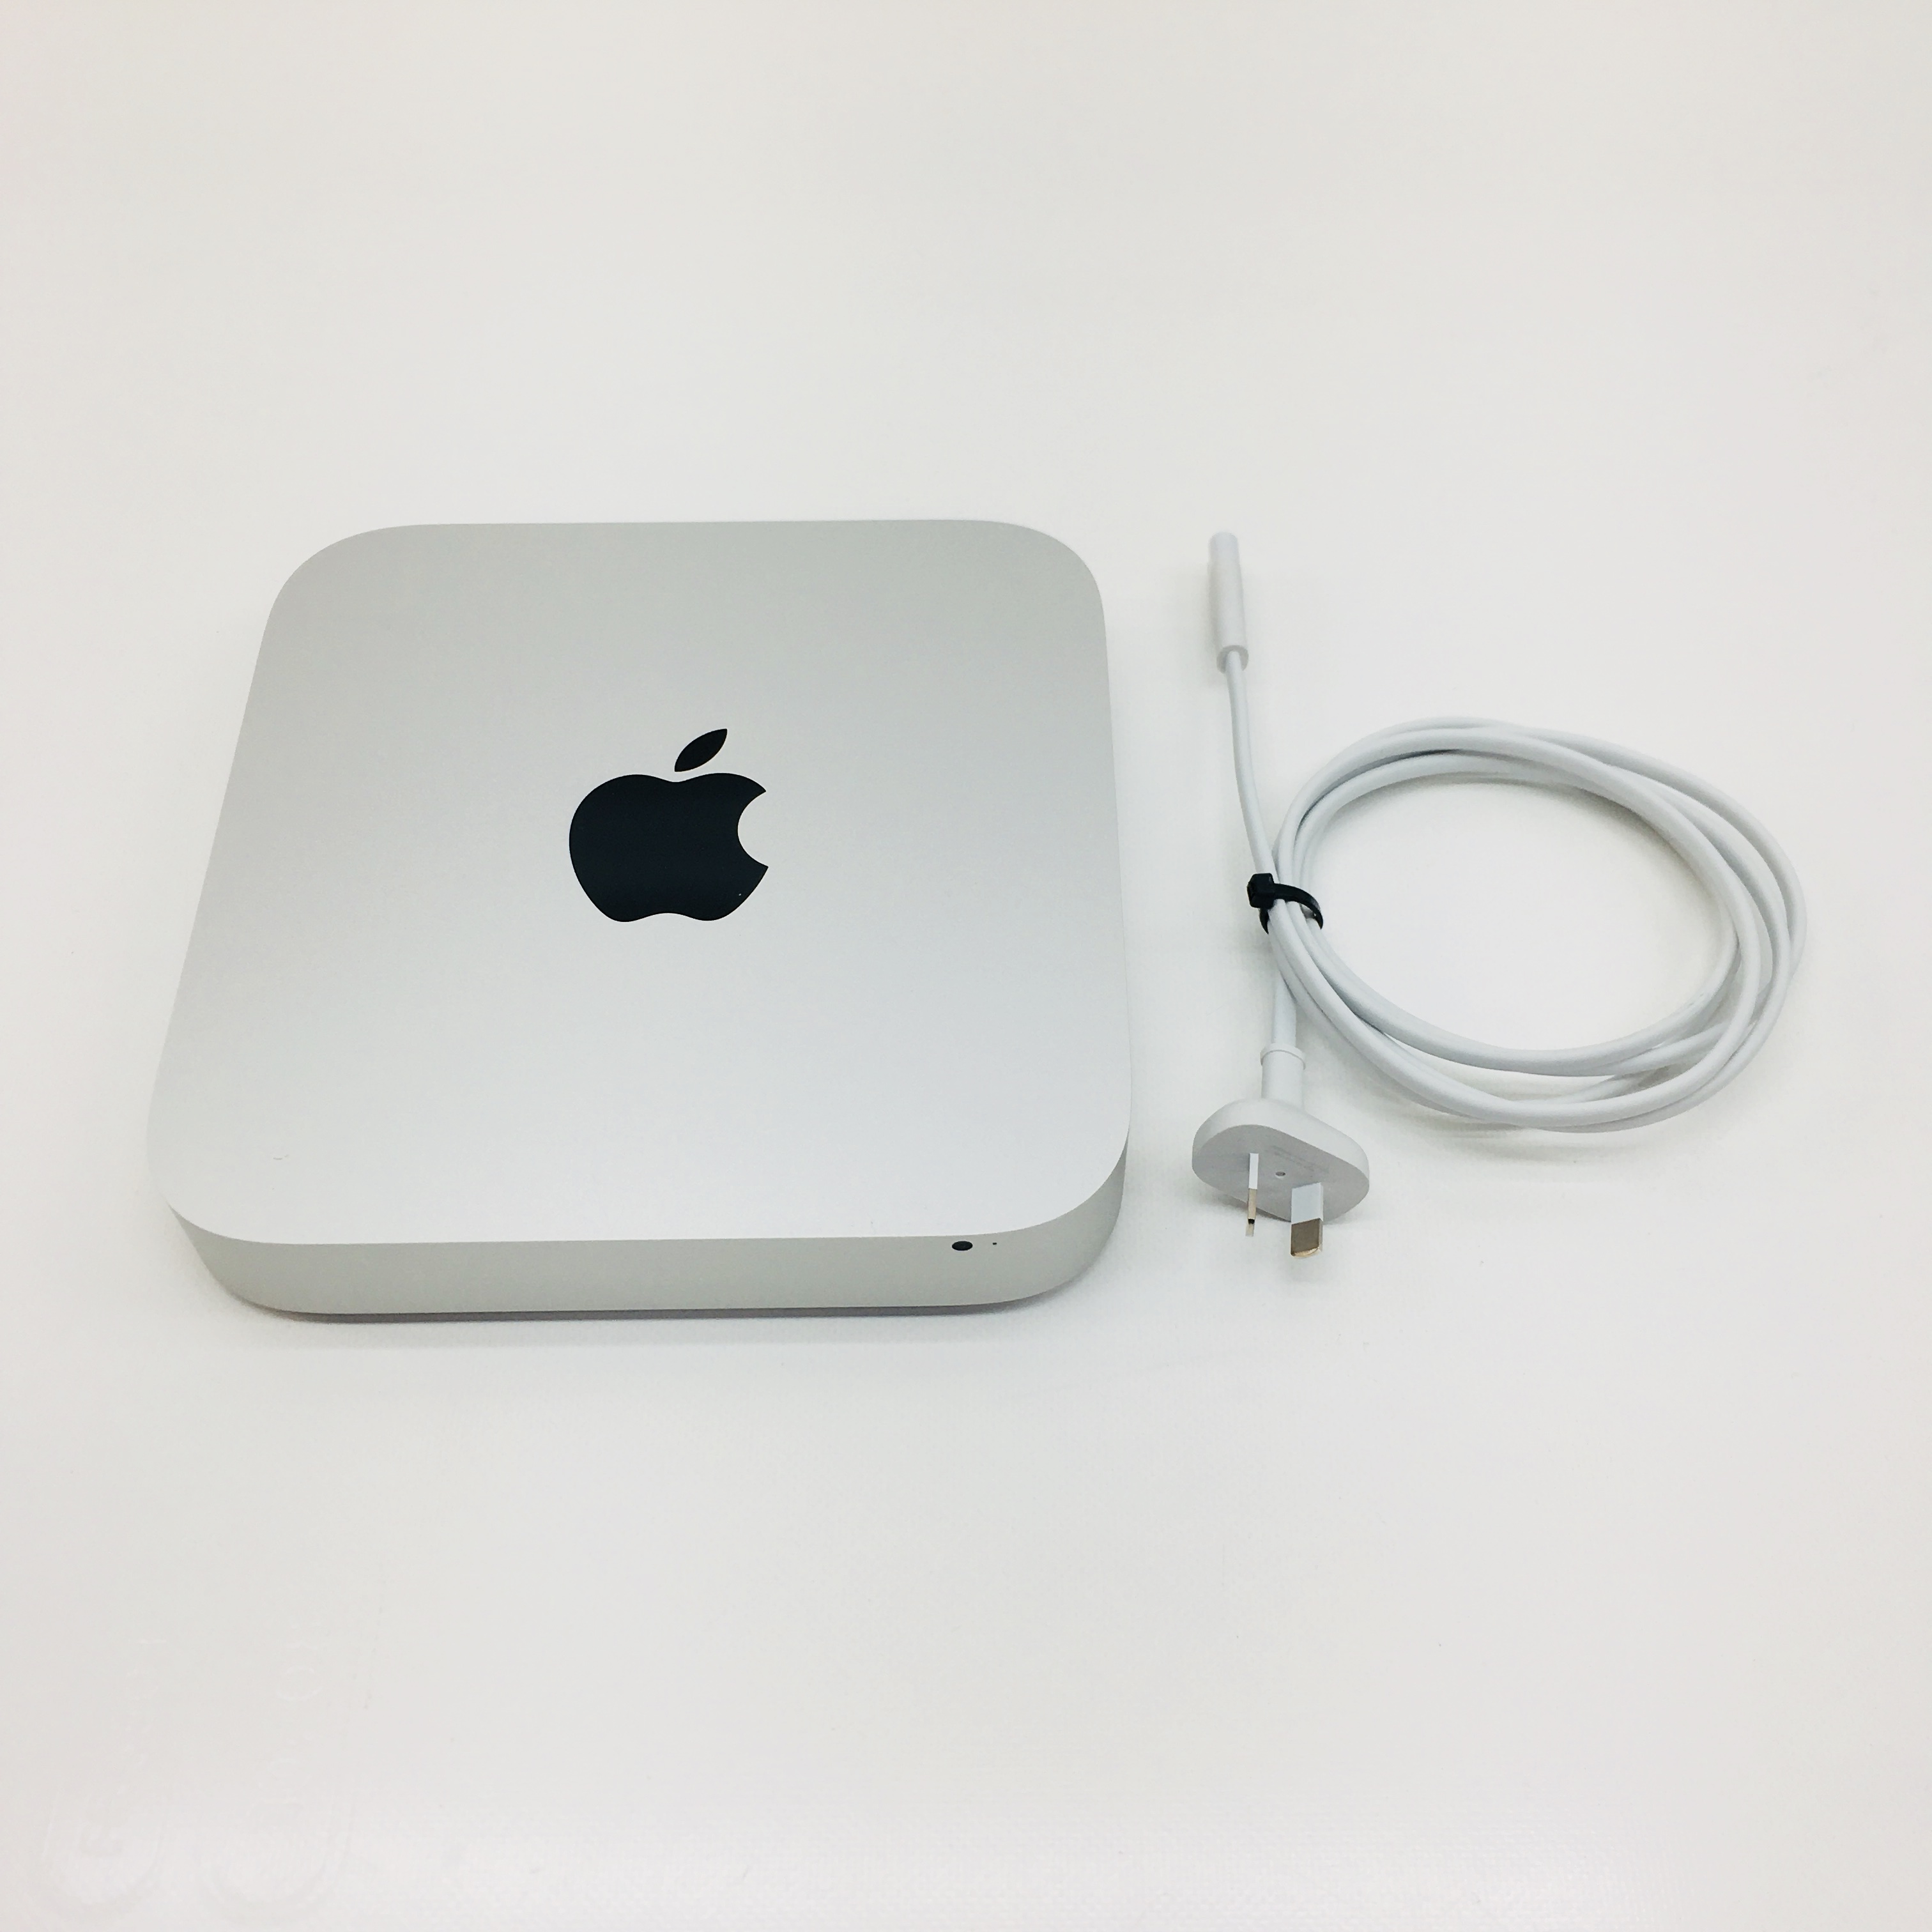 mac mini late 2012 i7